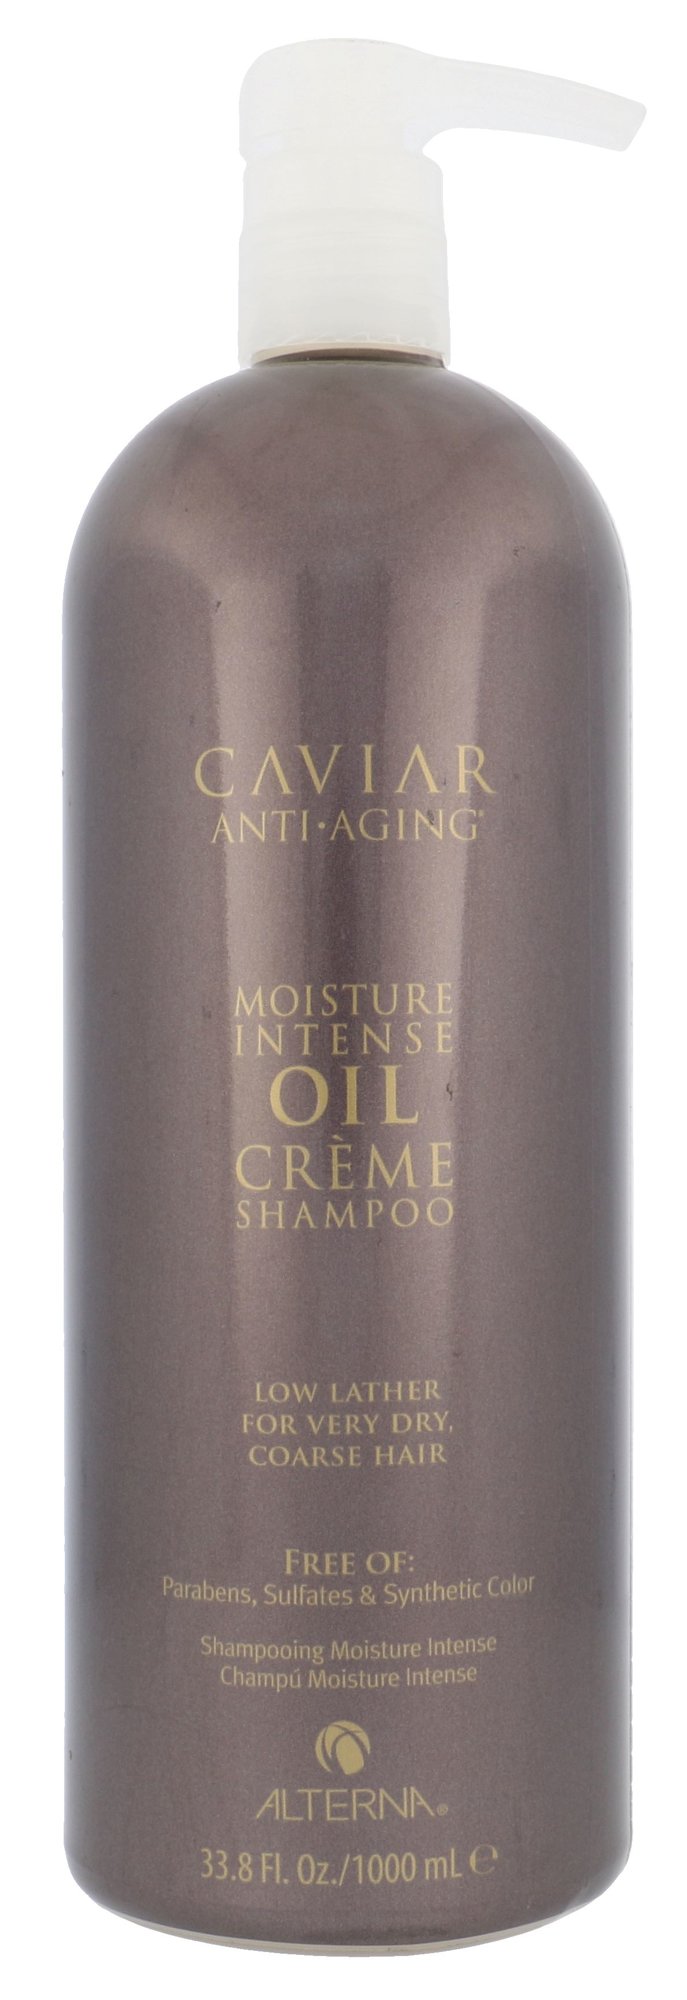 Alterna Caviar Anti-Aging Moisture Intense Oil Creme šampūnas